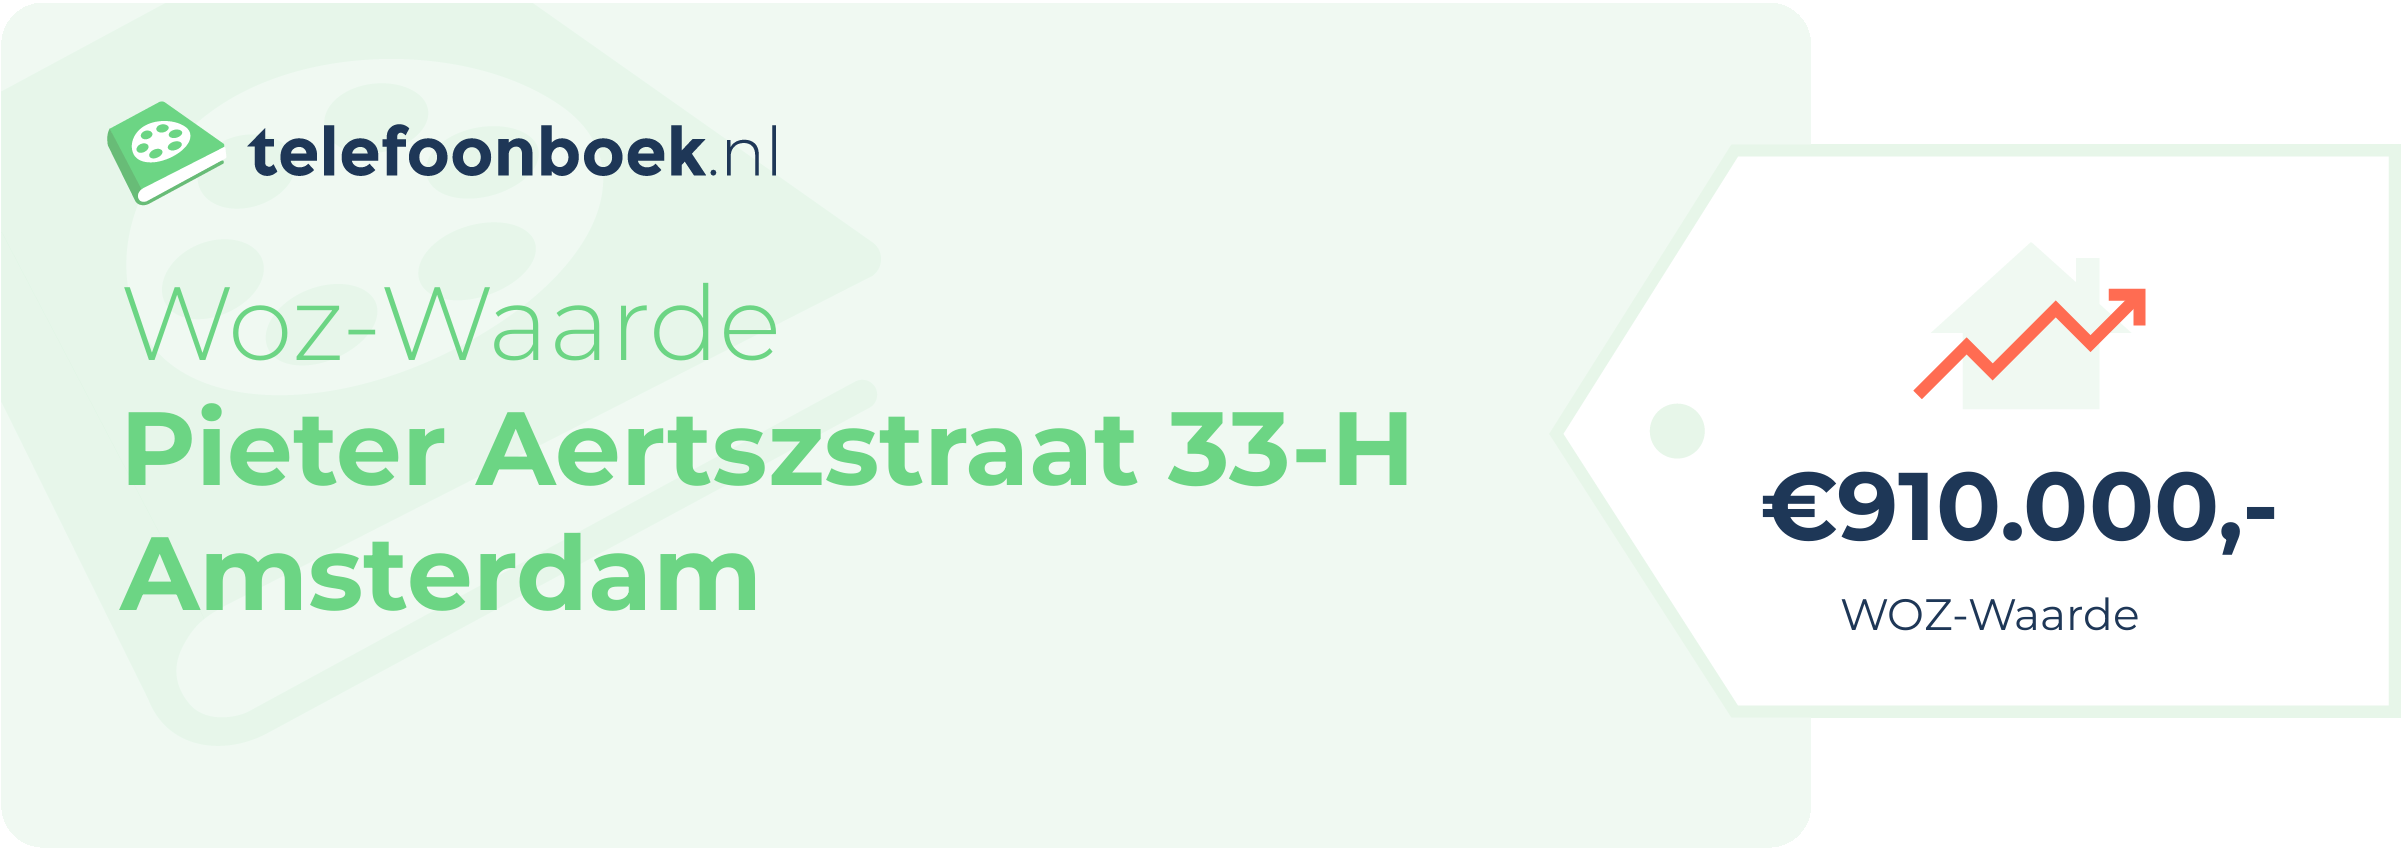 WOZ-waarde Pieter Aertszstraat 33-H Amsterdam